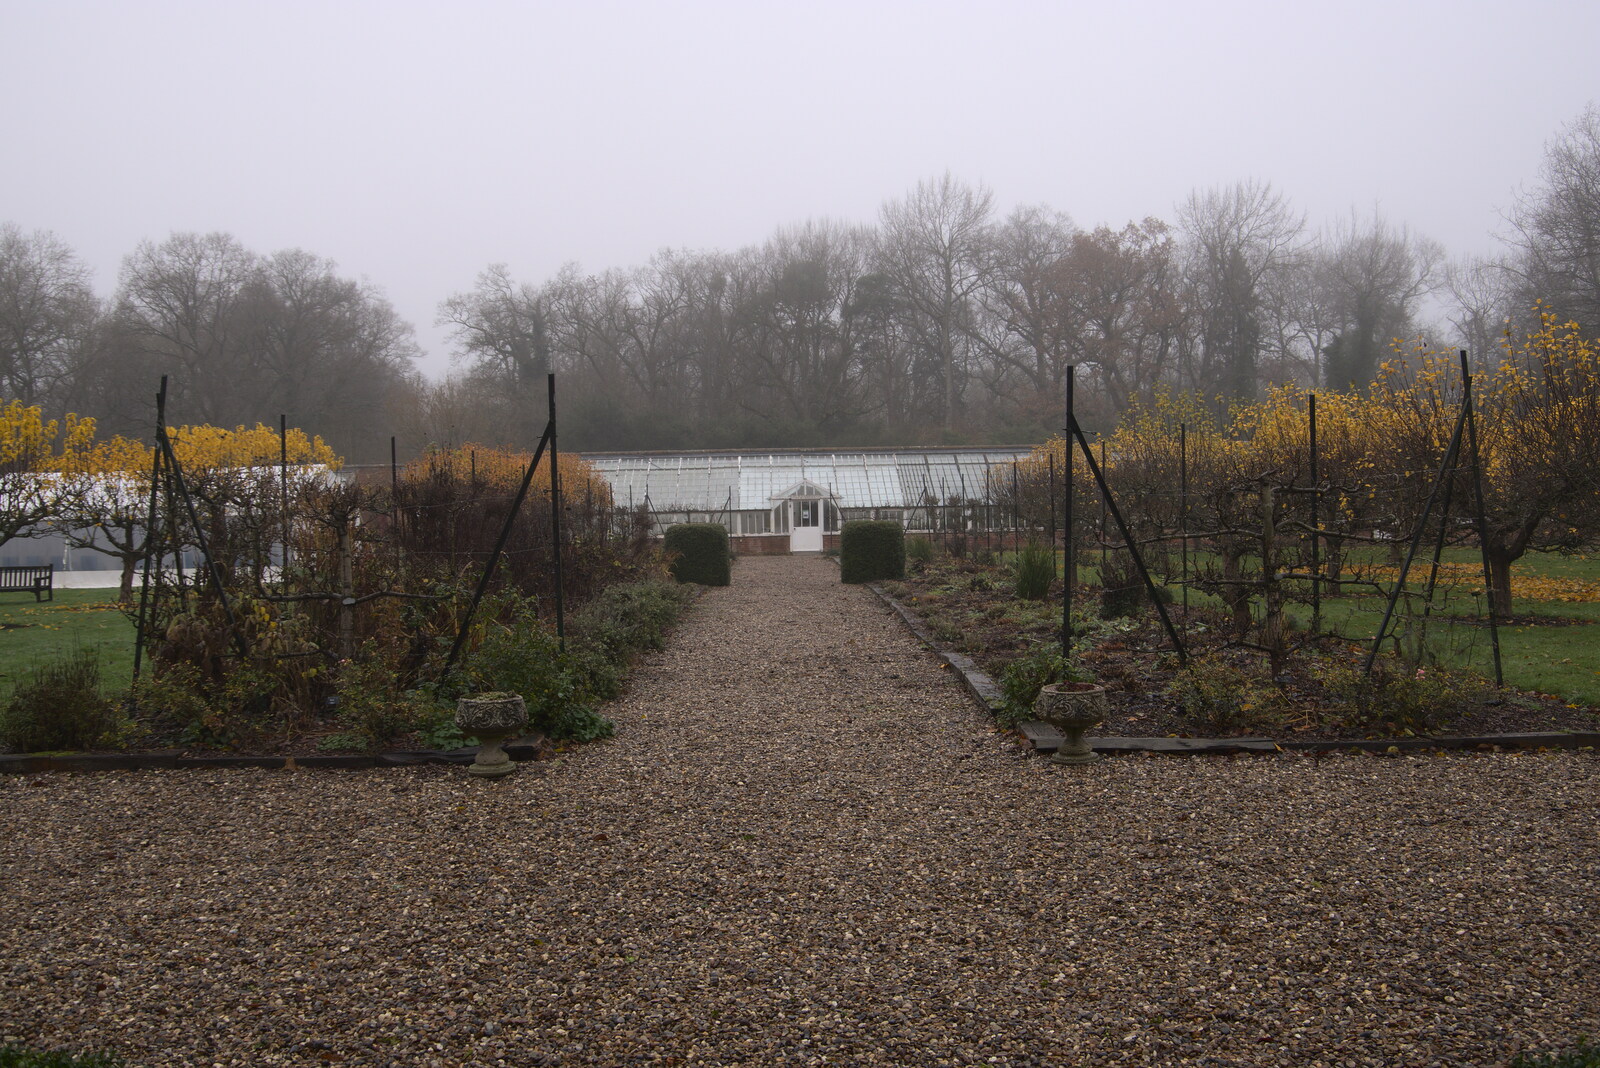 The walled garden in the sad mist of winter from A Return to Thornham Walks, Thornham, Suffolk - 19th December 2021